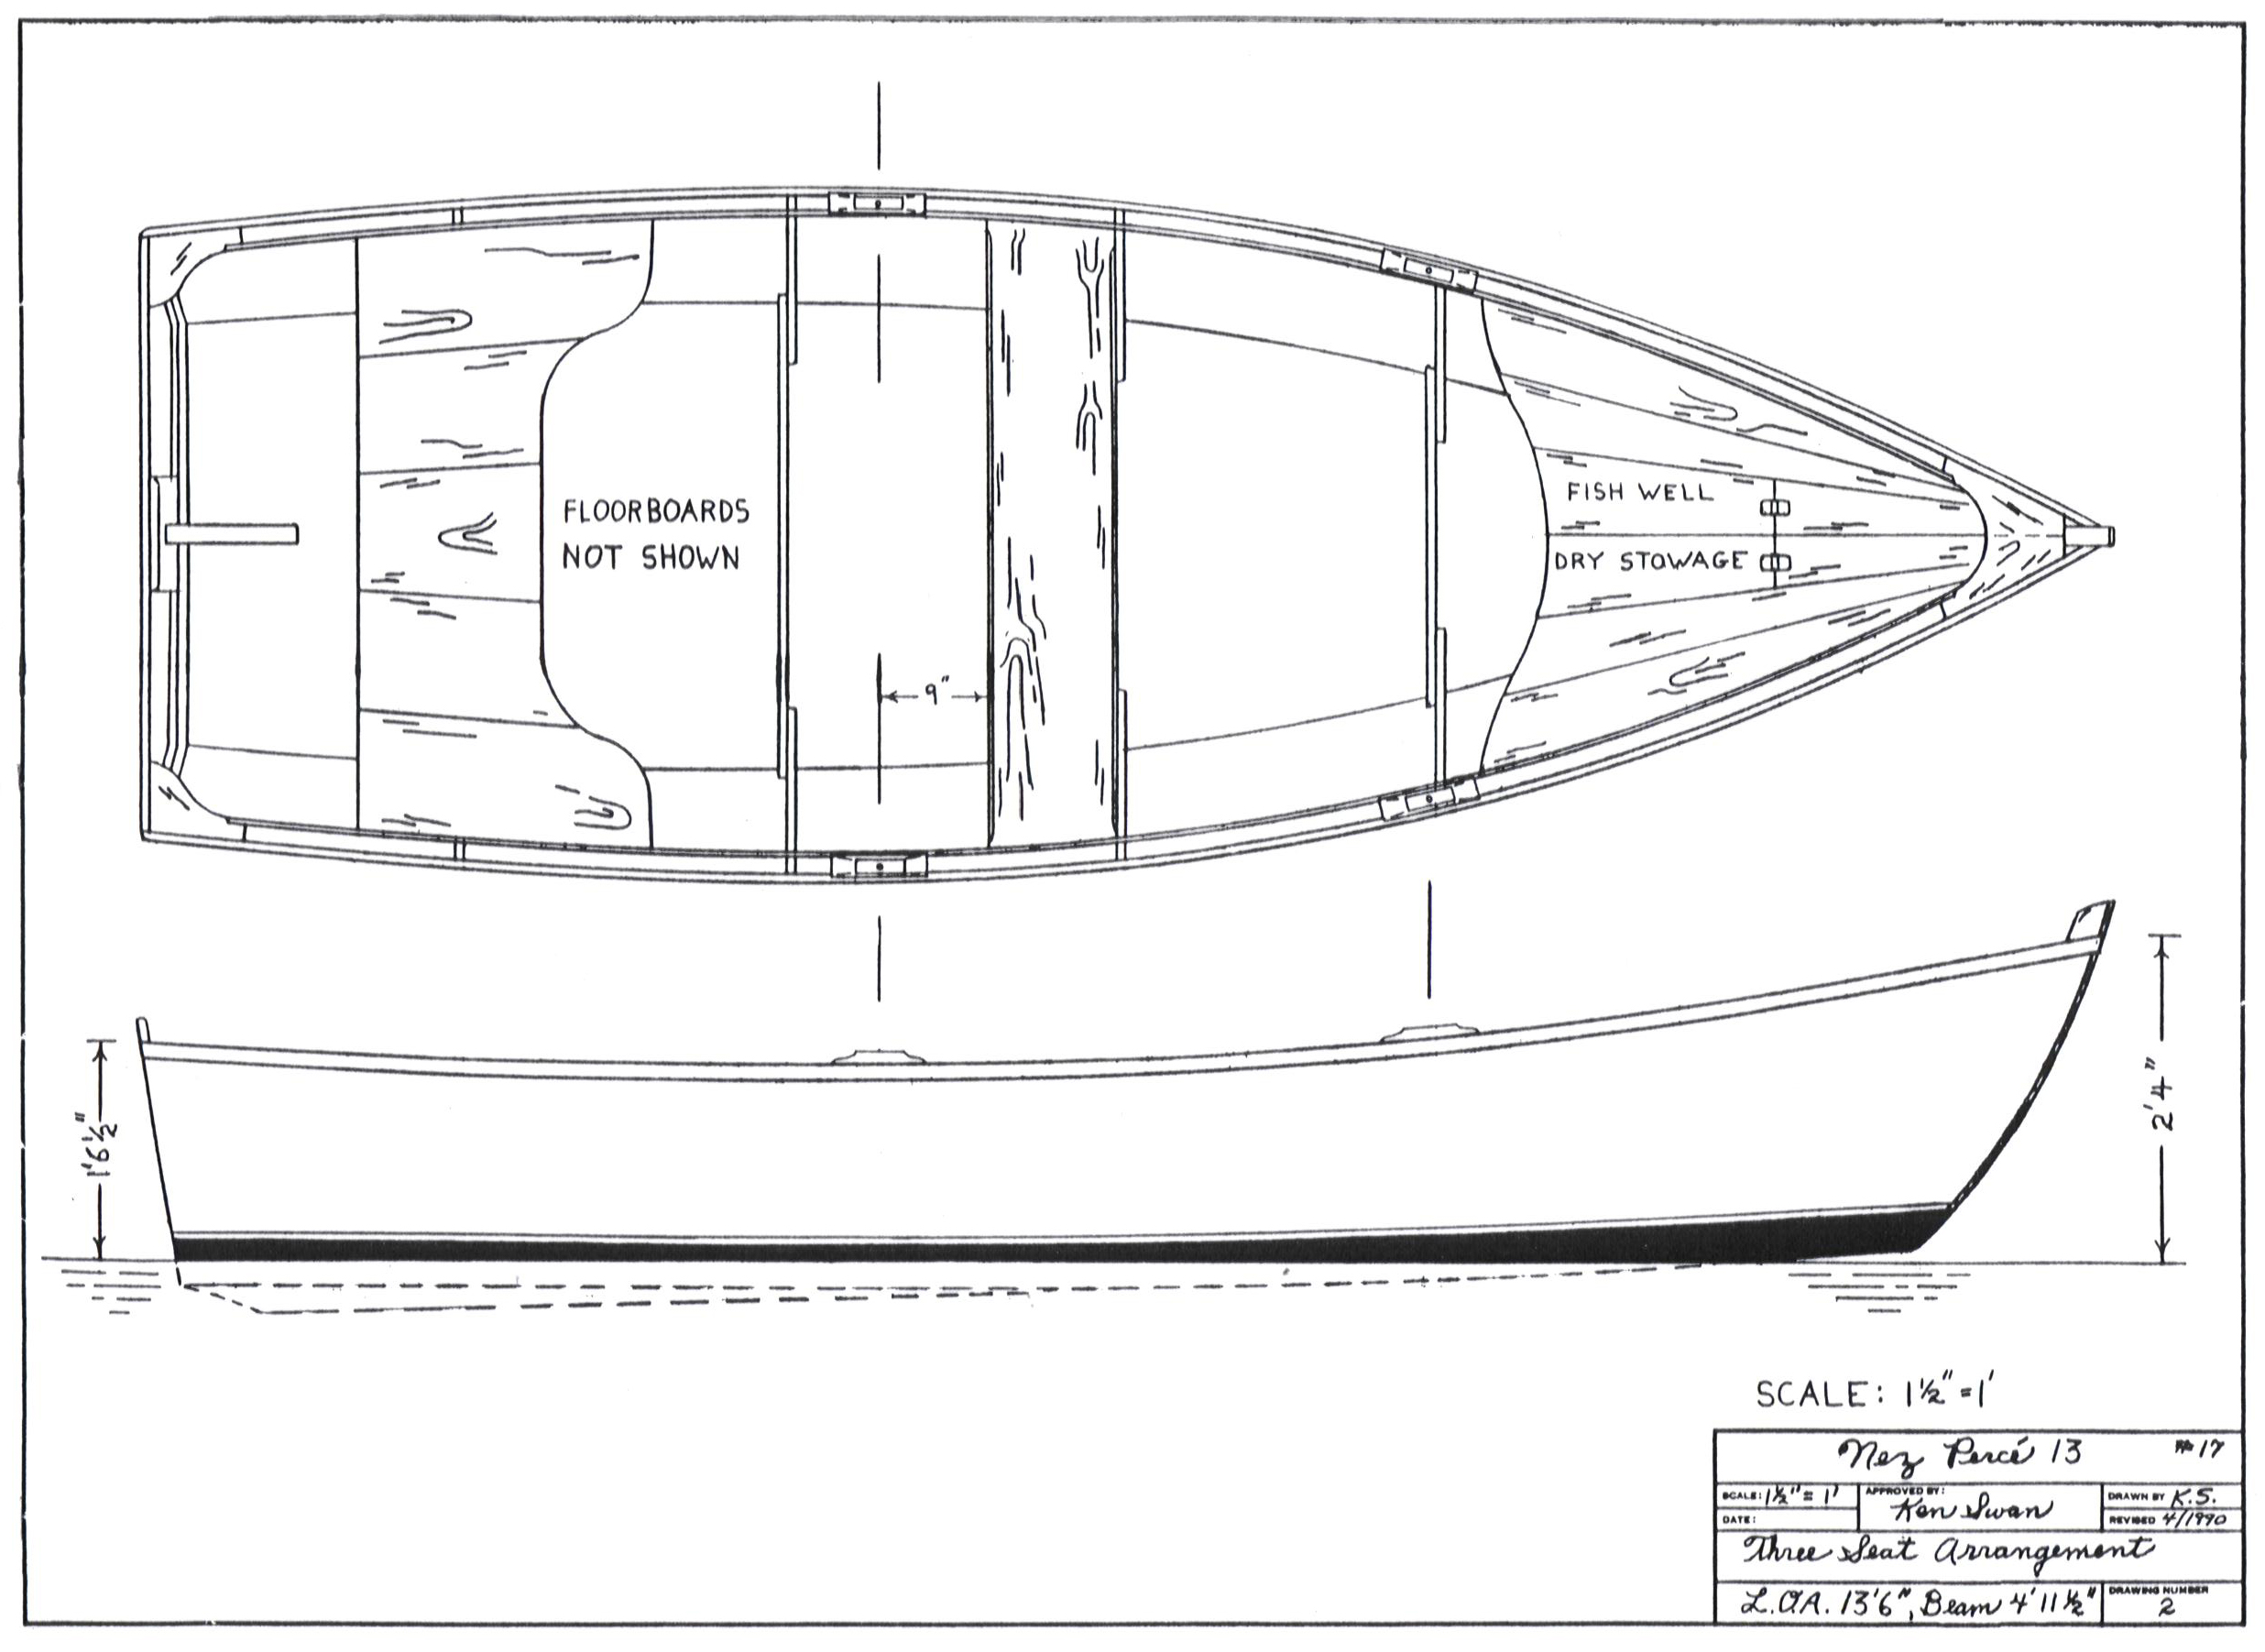 Boat designs